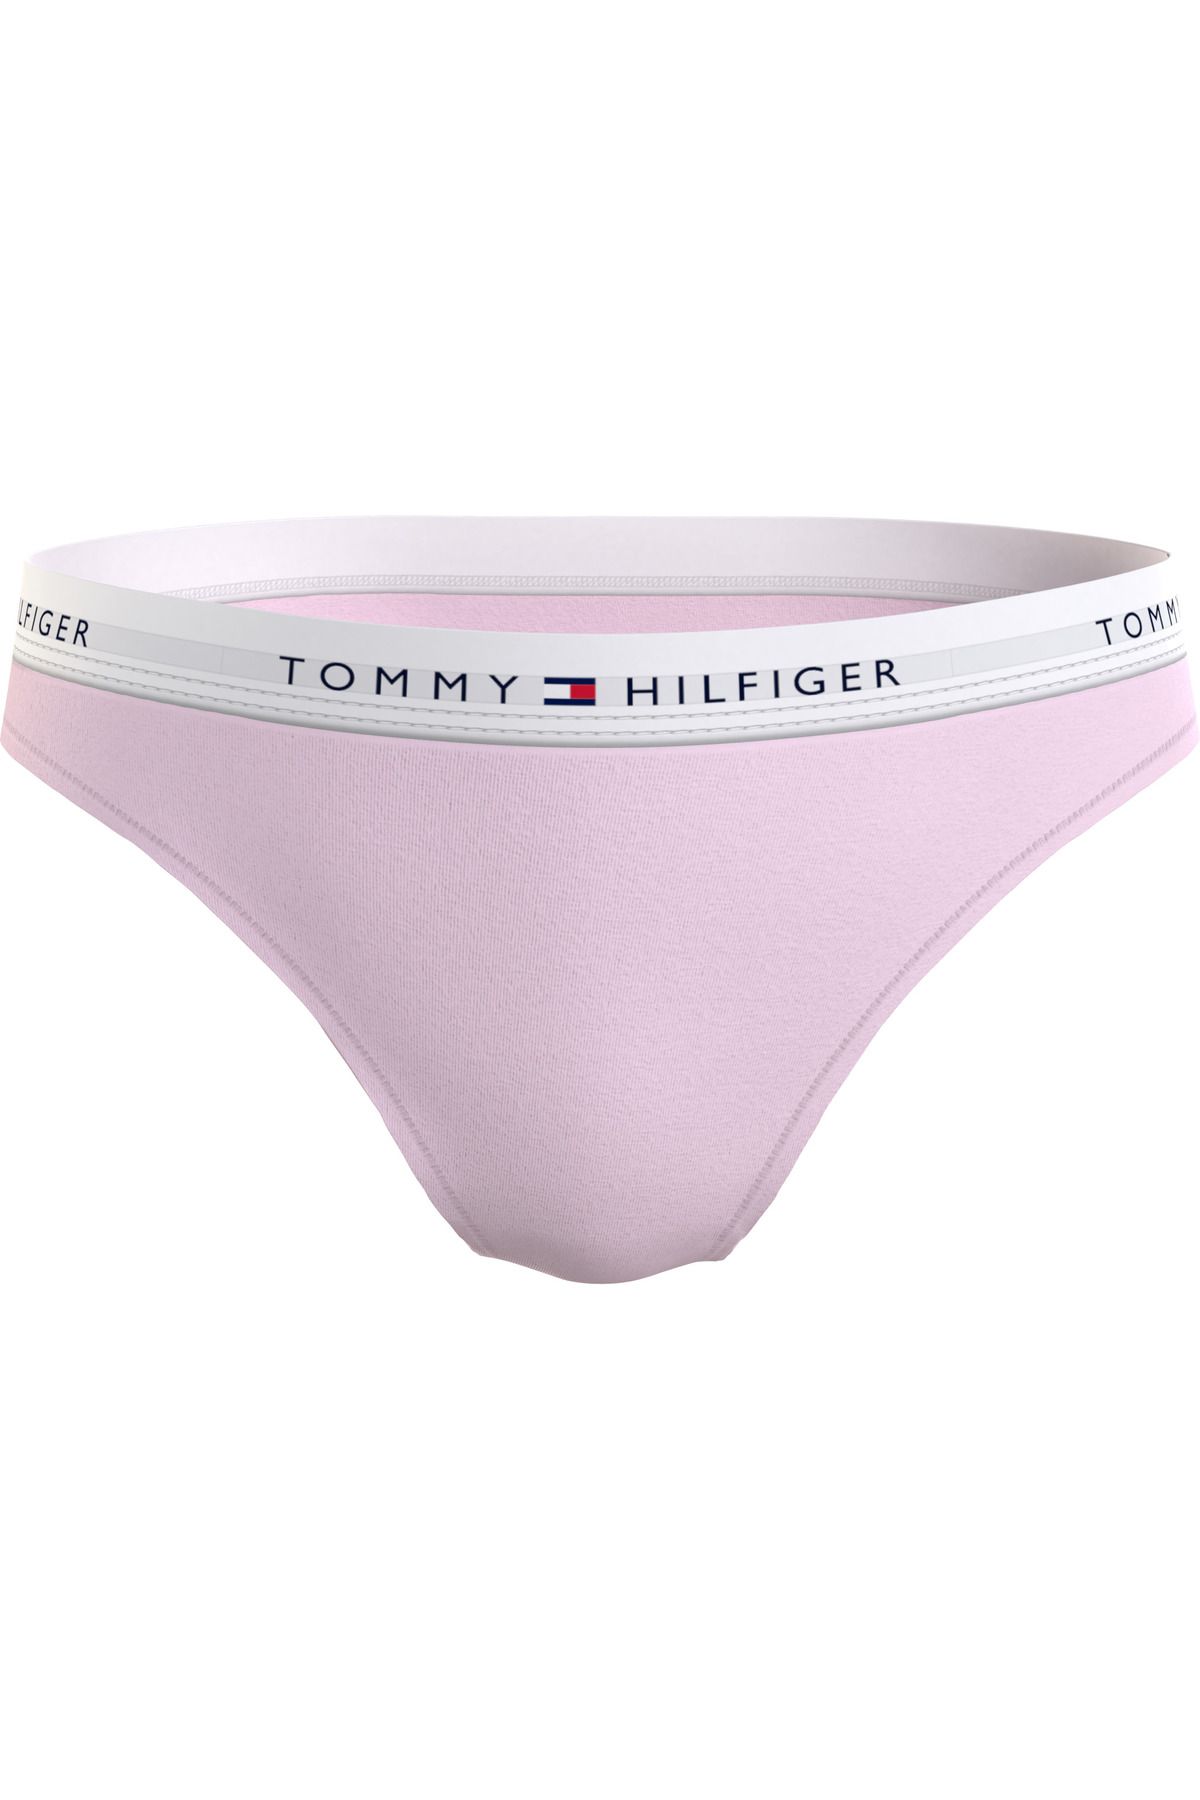 Tommy Hilfiger Kadın Marka Logolu Elastik Bantlı Günlük Kullanıma Uygun Pembe Külot Uw0uw03836-Tog